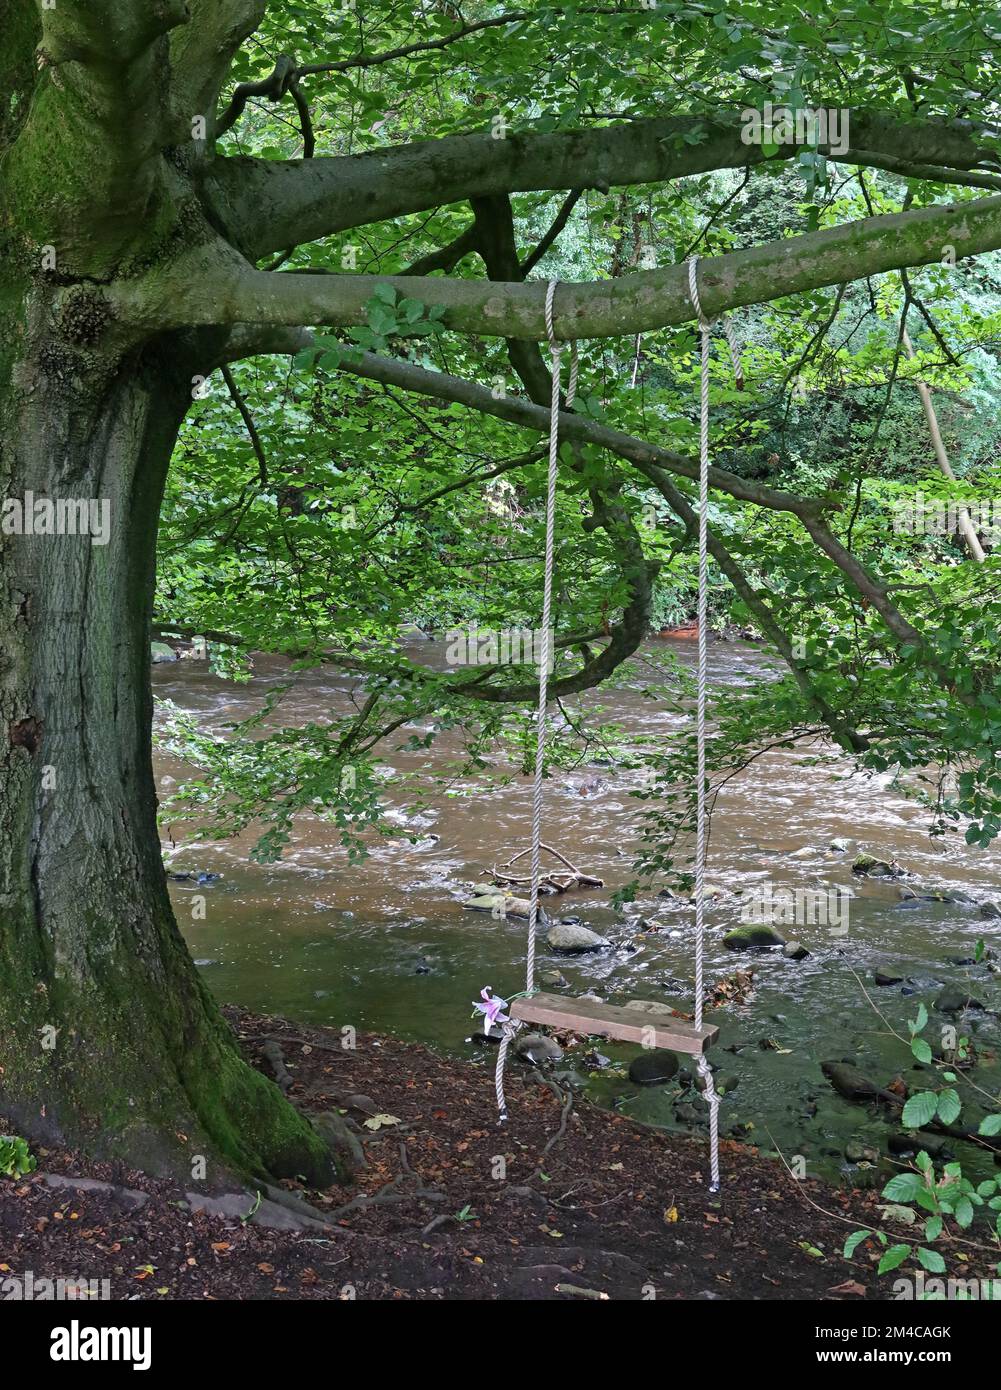 Balançoire à la main sur une branche d'un arbre, près de la rivière Goyt, parc de Brabyns, Marple, Stockport, Cheshire, Angleterre, Royaume-Uni, SK6 5DT Banque D'Images